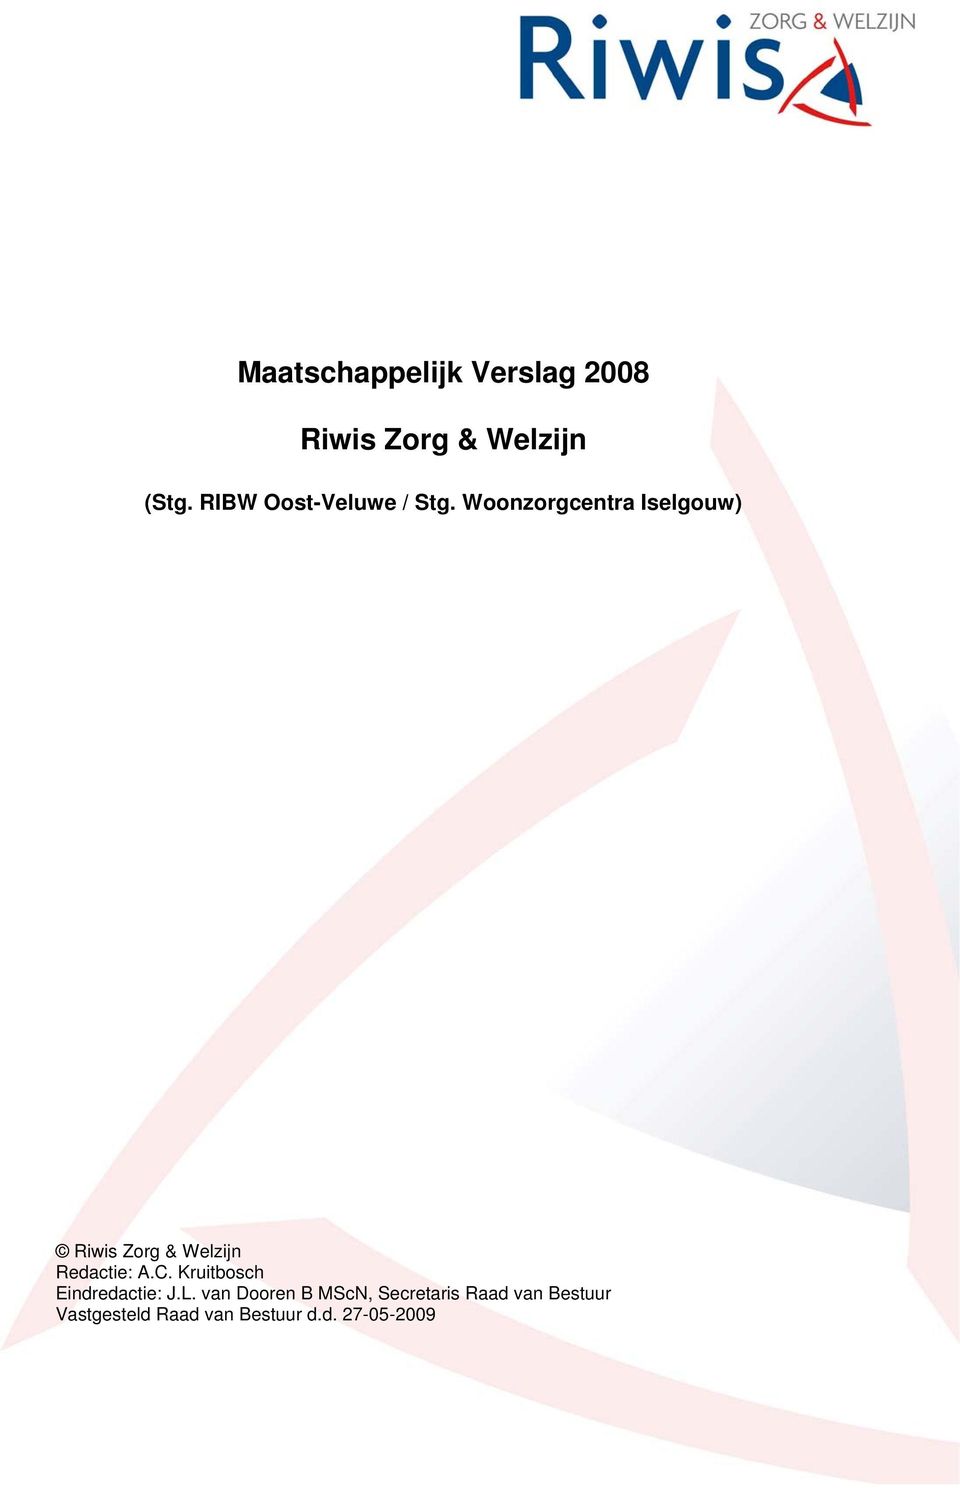 Woonzorgcentra Iselgouw) Riwis Zorg & Welzijn Redactie: A.C.